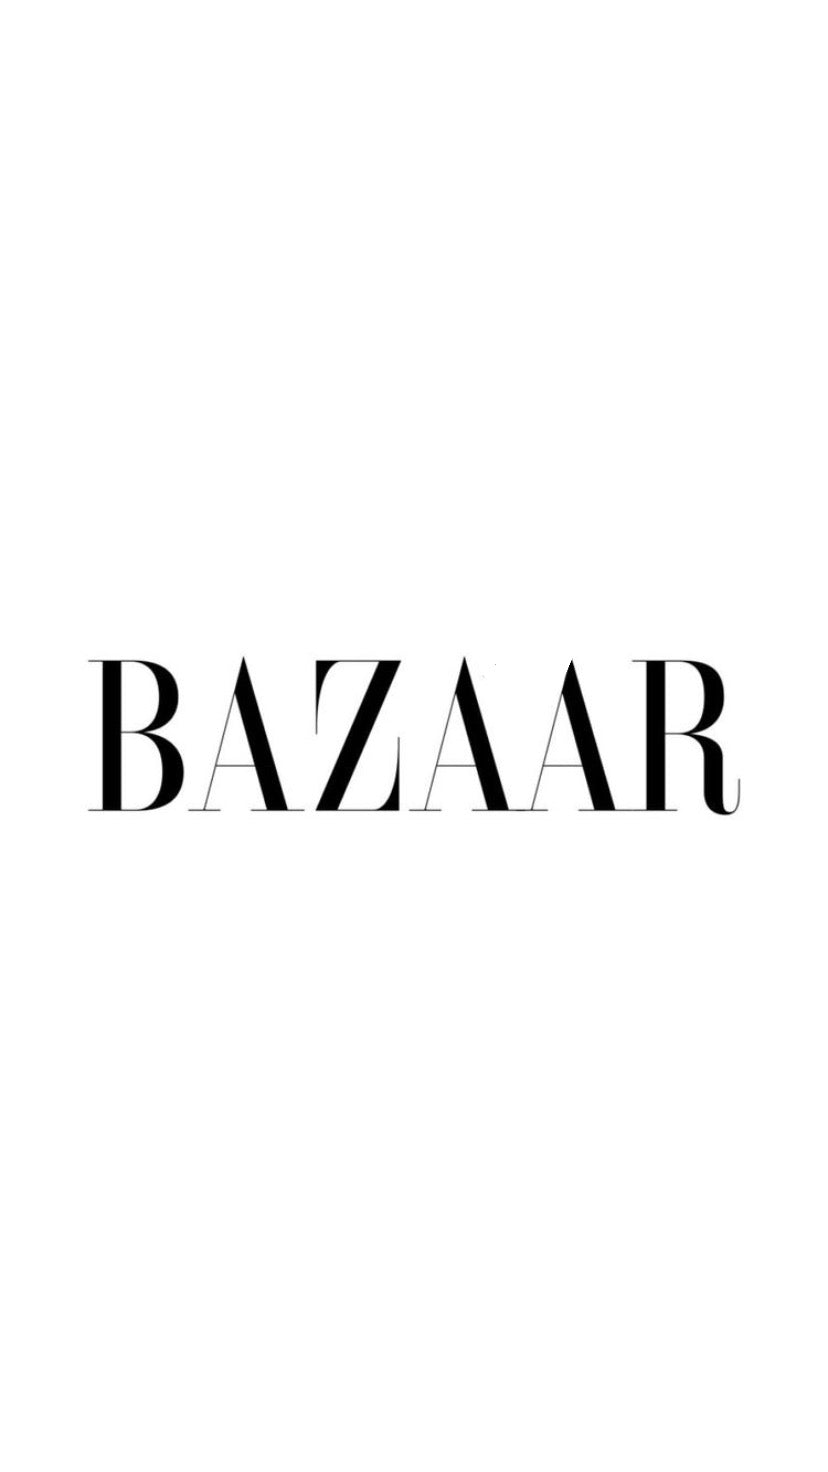 Online Bazzar